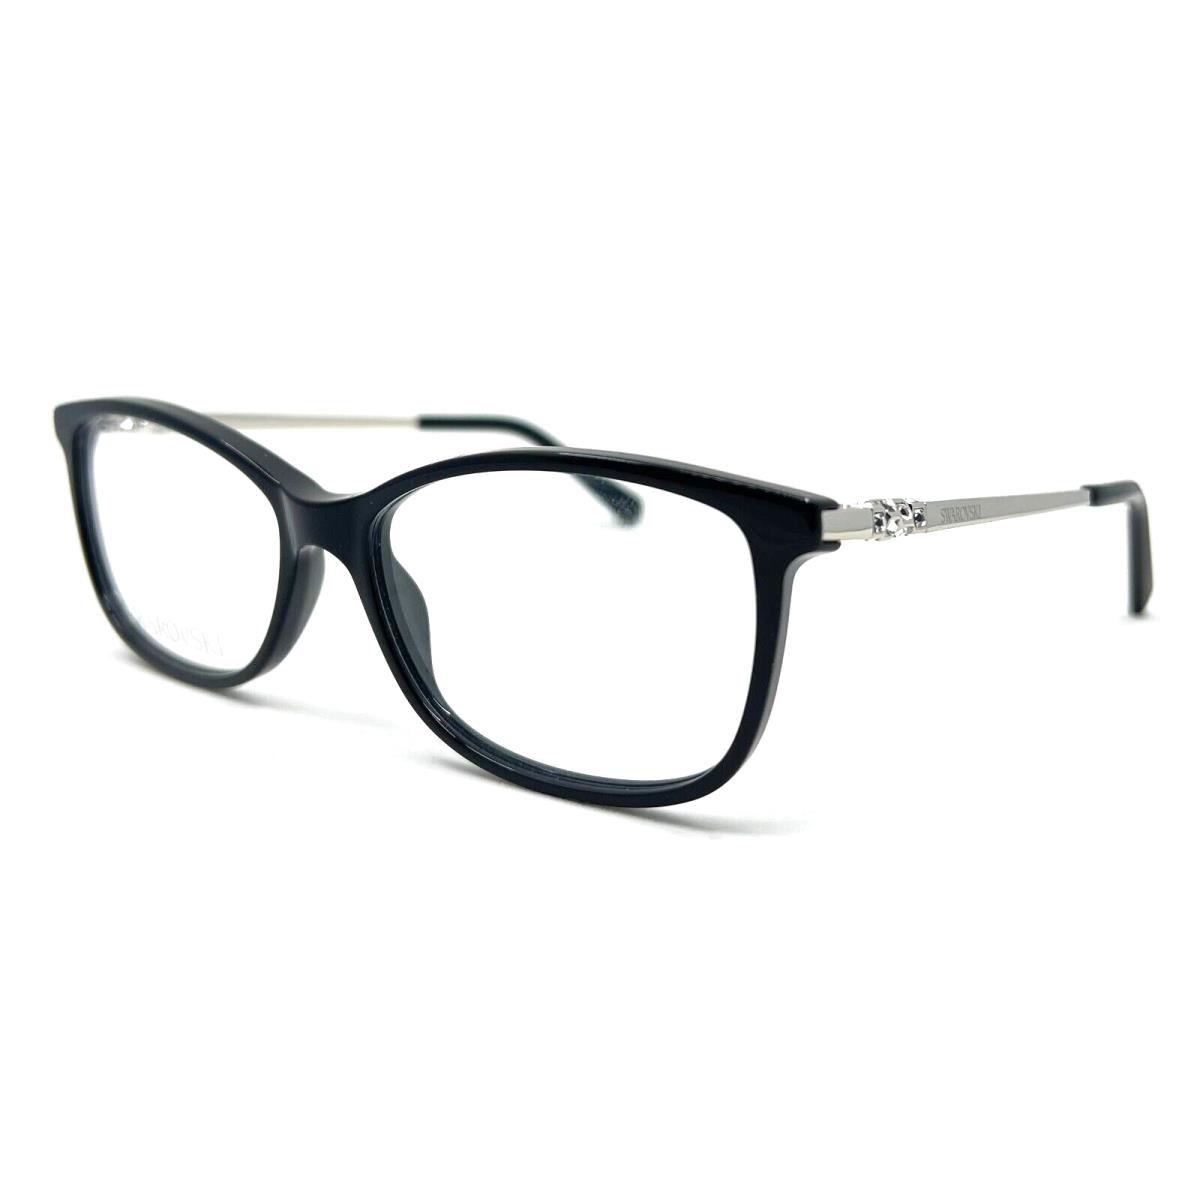 Swarovski - SK5285 001 54/15/140 - Black - Eyeglasses Case